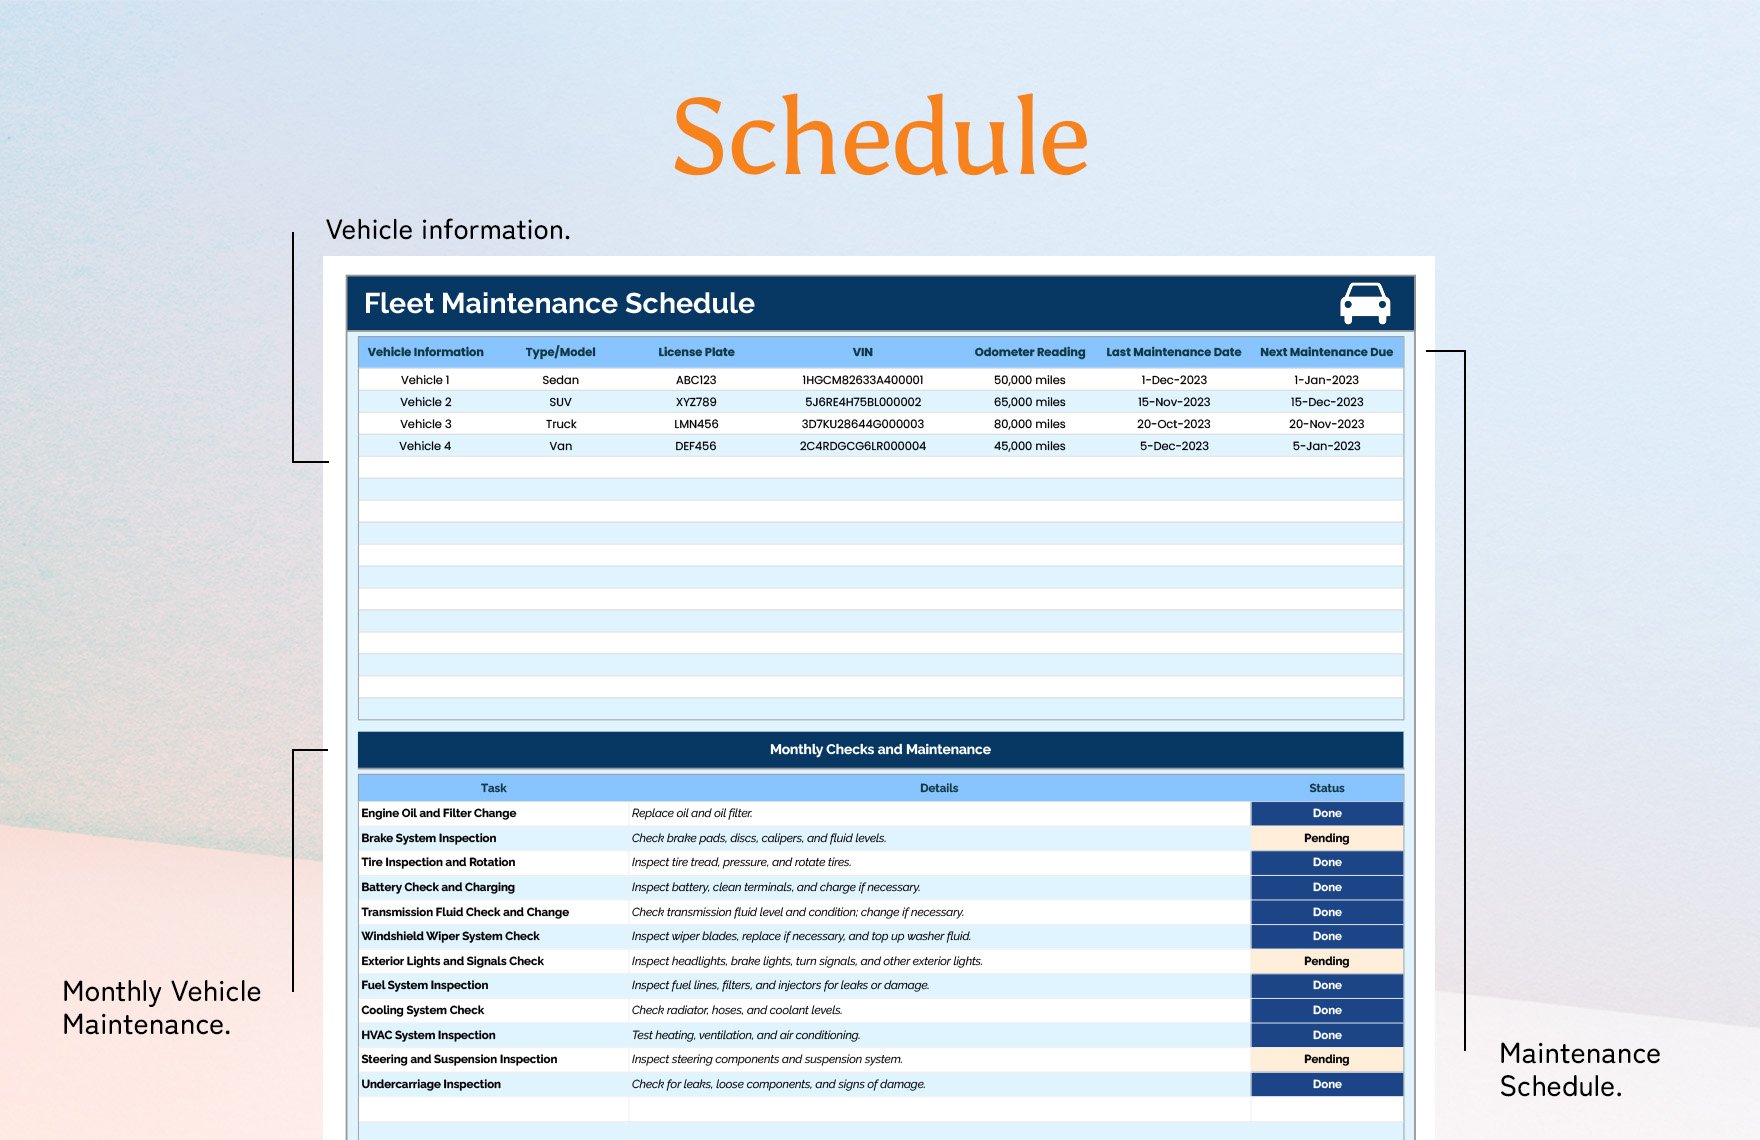 Fleet Maintenance Schedule Template